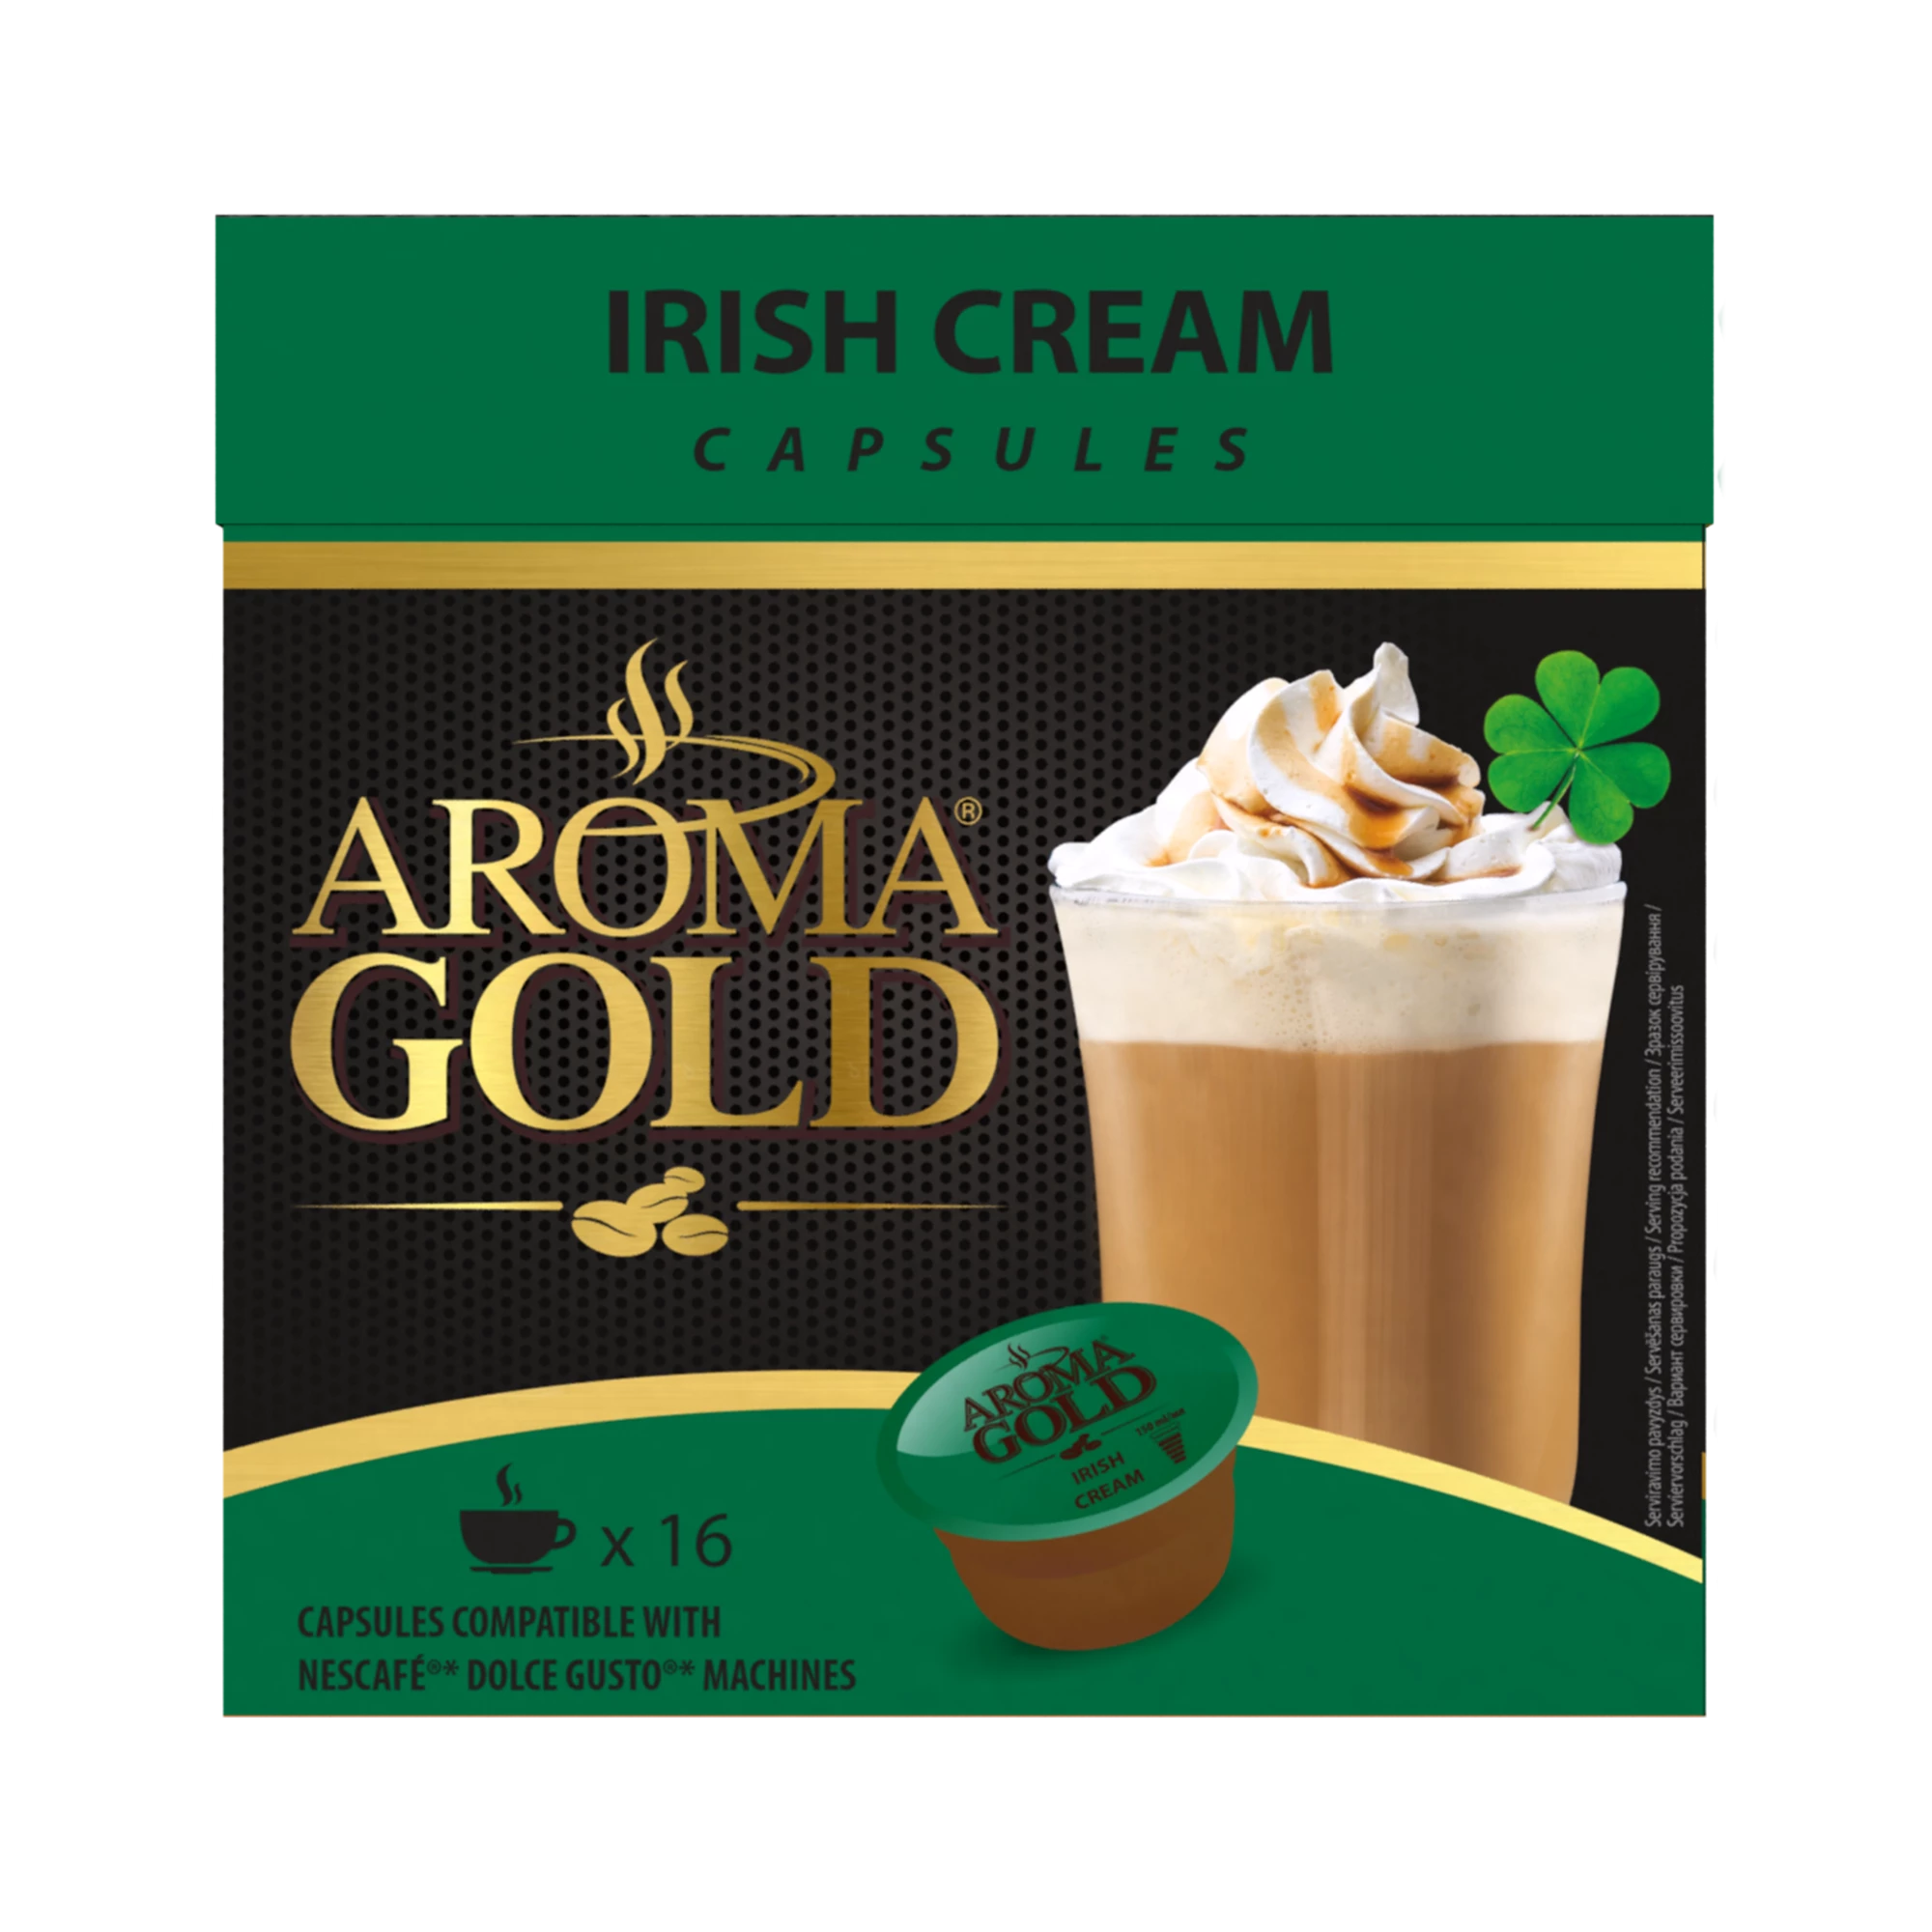 Совместимость с ирландским кофе со сливками Dolce Gusto X 16 — Aroma Gold